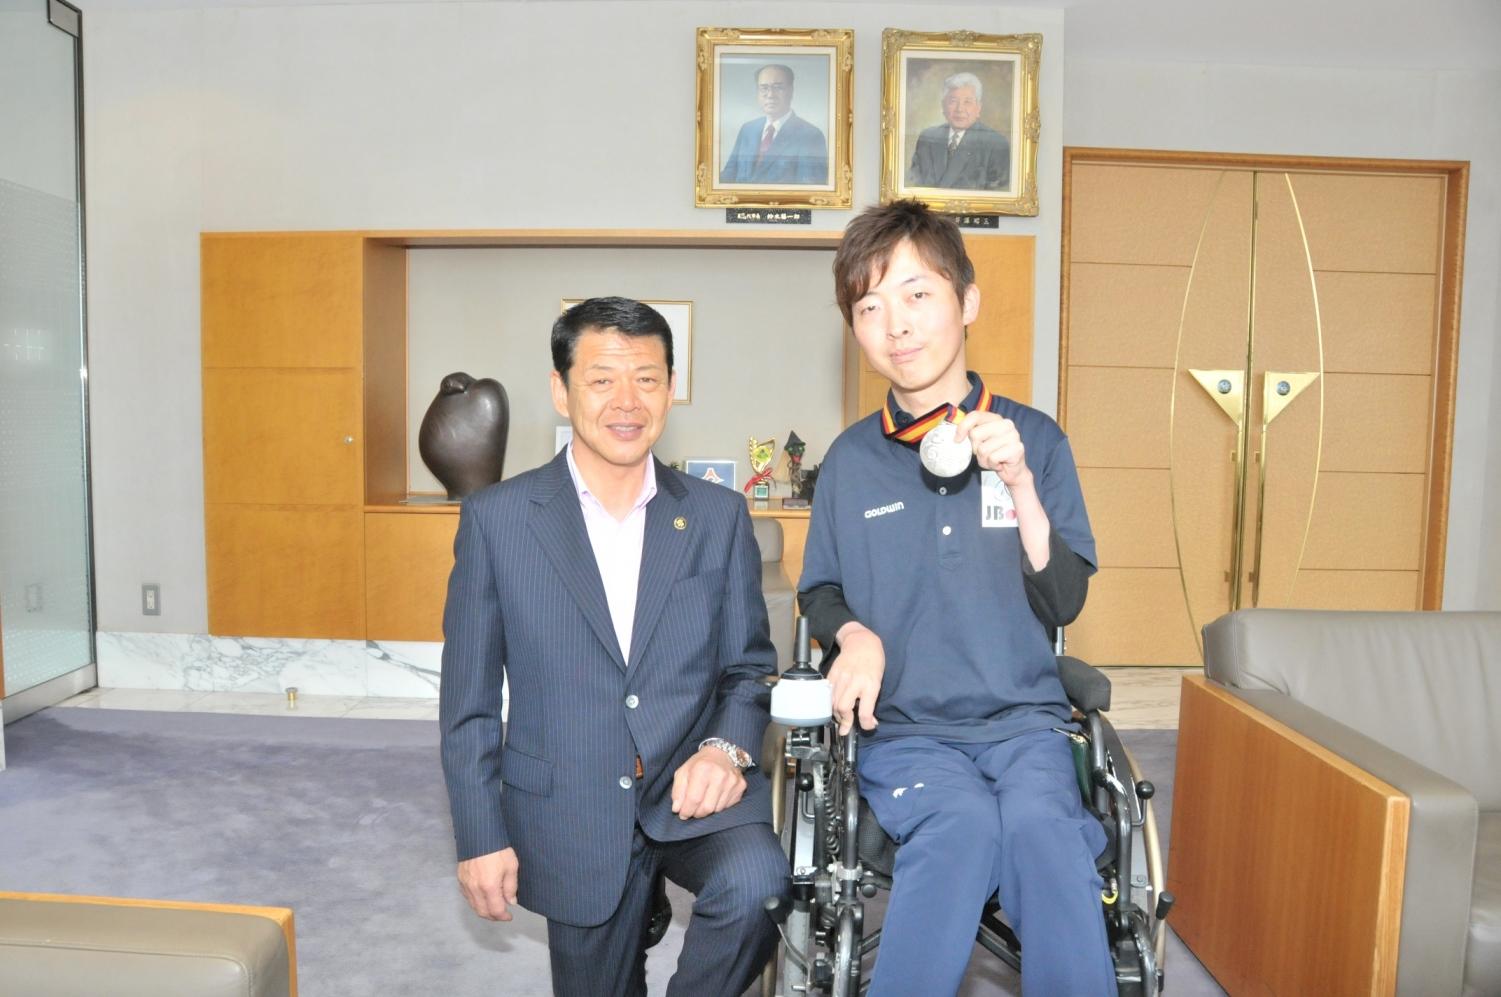 2017年6月21日メダルを掲げる杉村英孝選手と横に並ぶ市長の写真